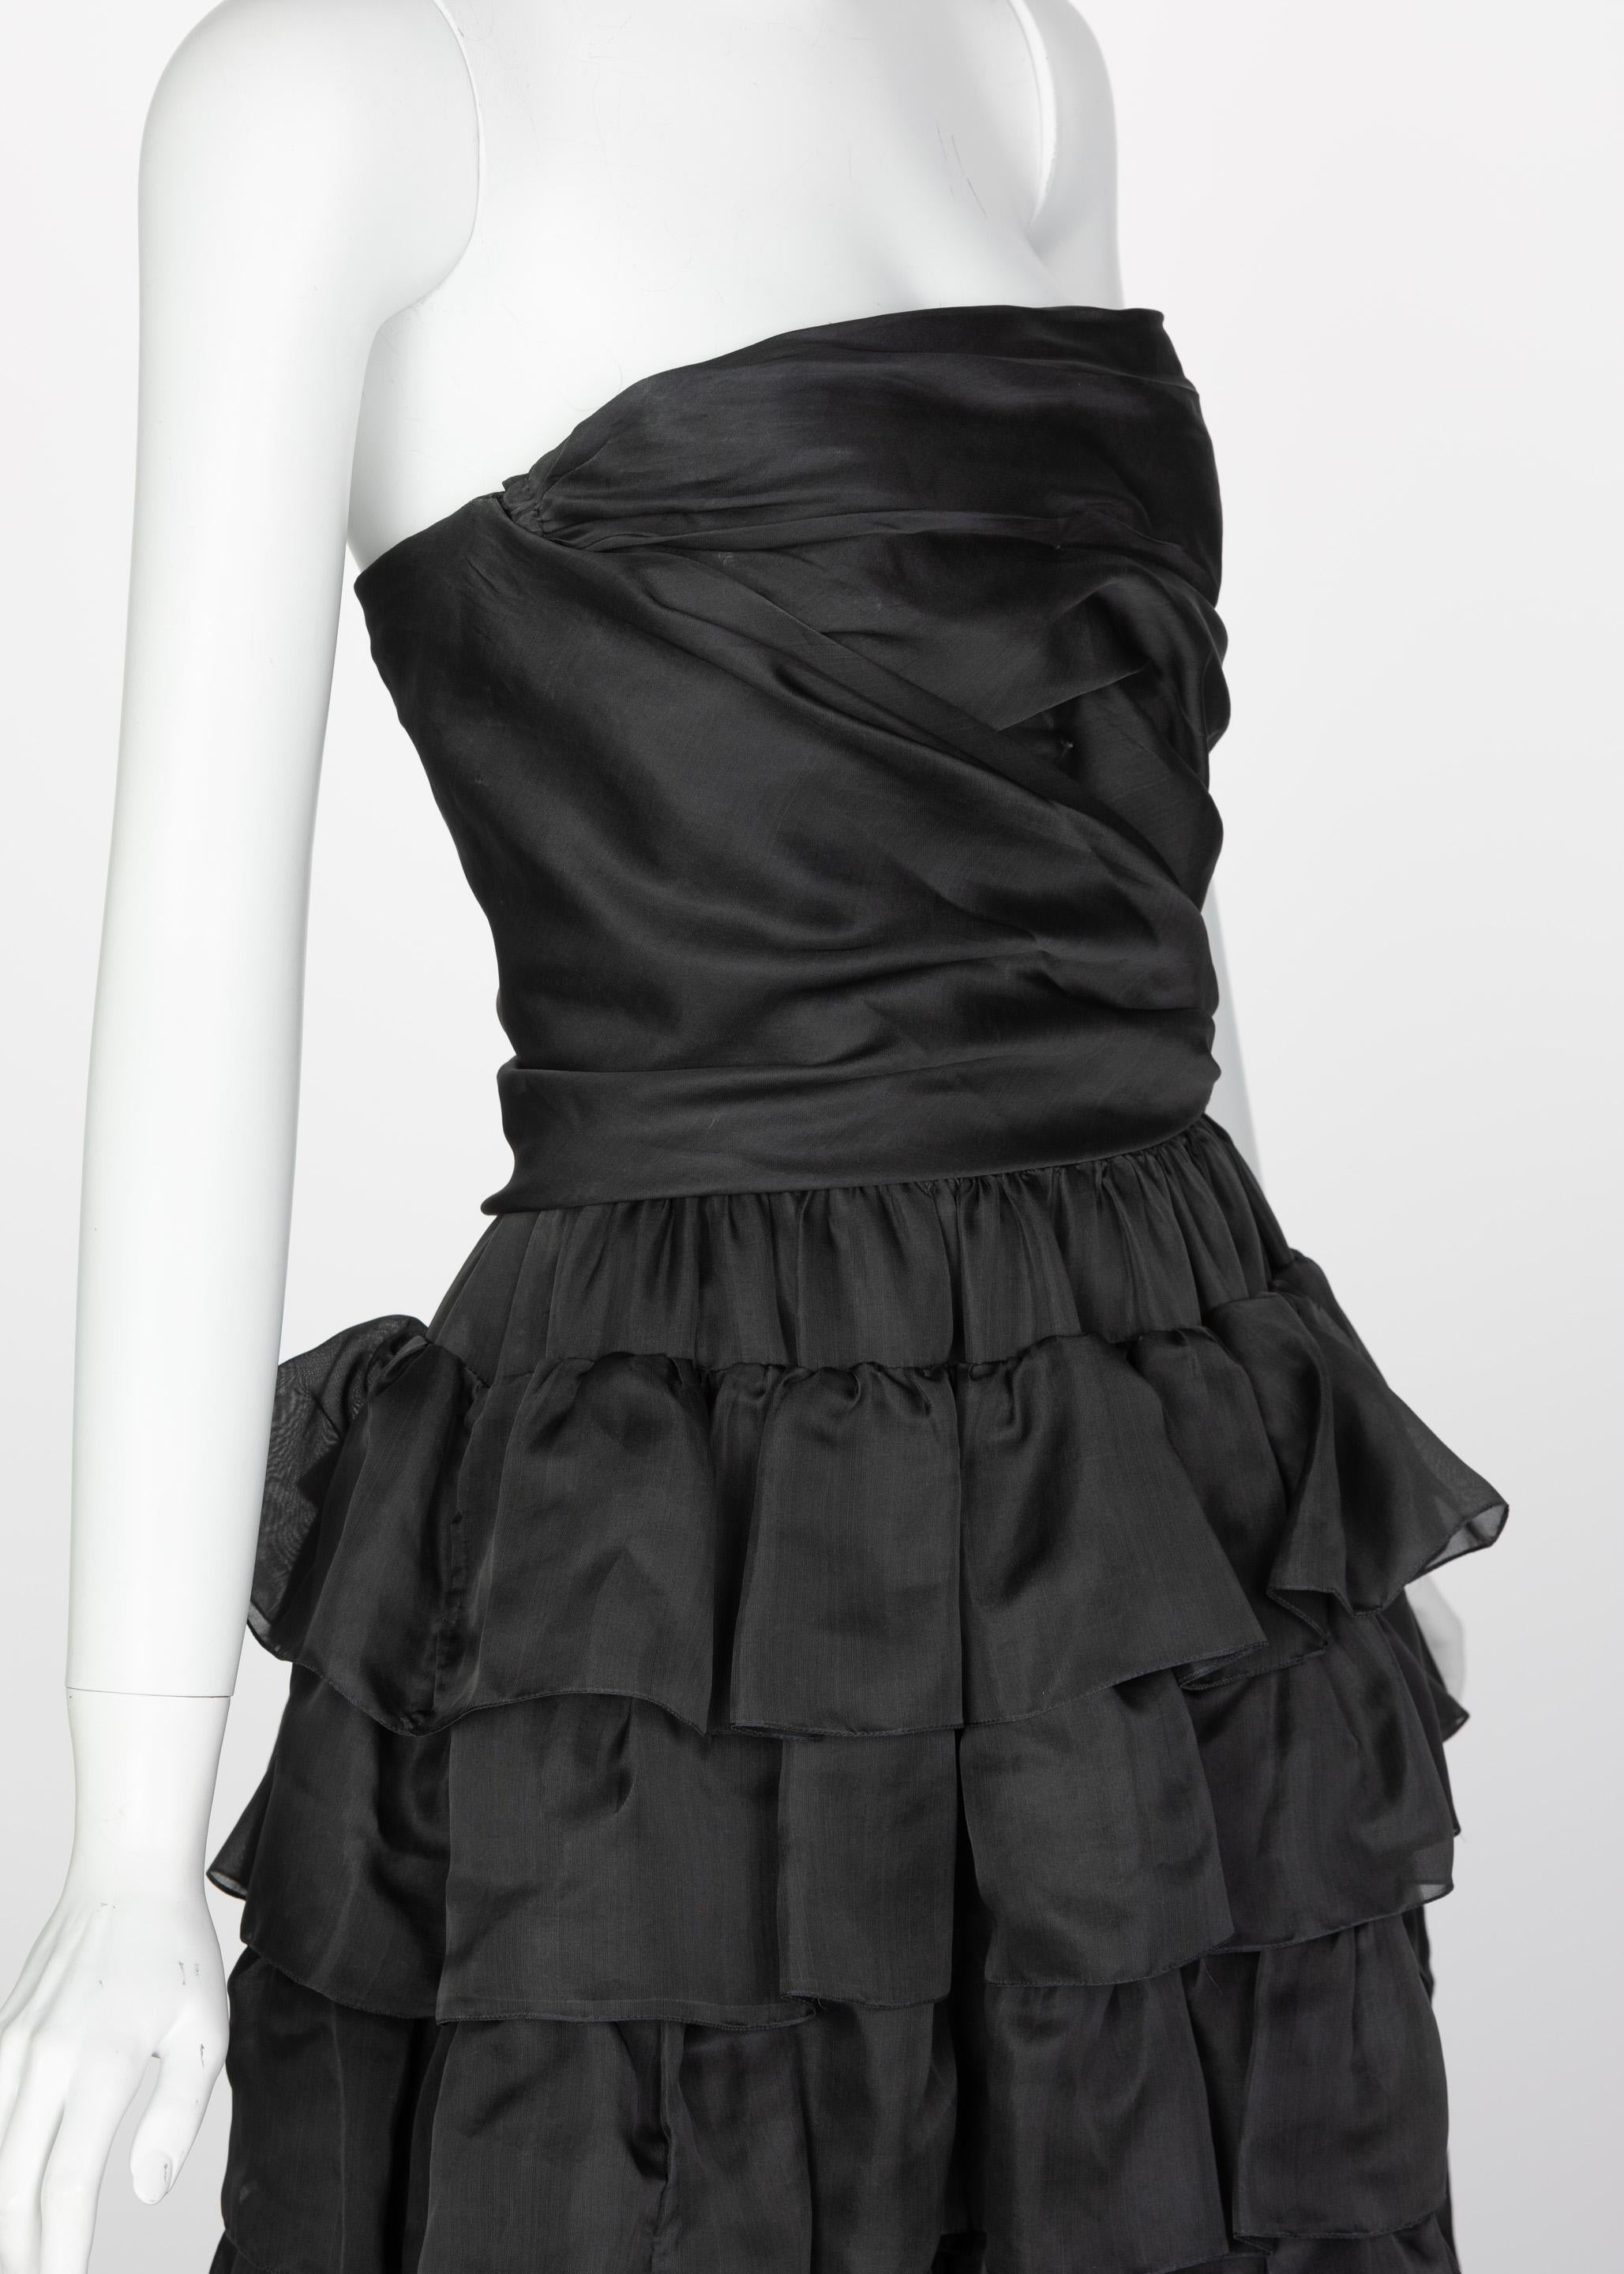 Givenchy - Robe sans bretelles noire à volants, haute couture, numérotée, années 1970 4